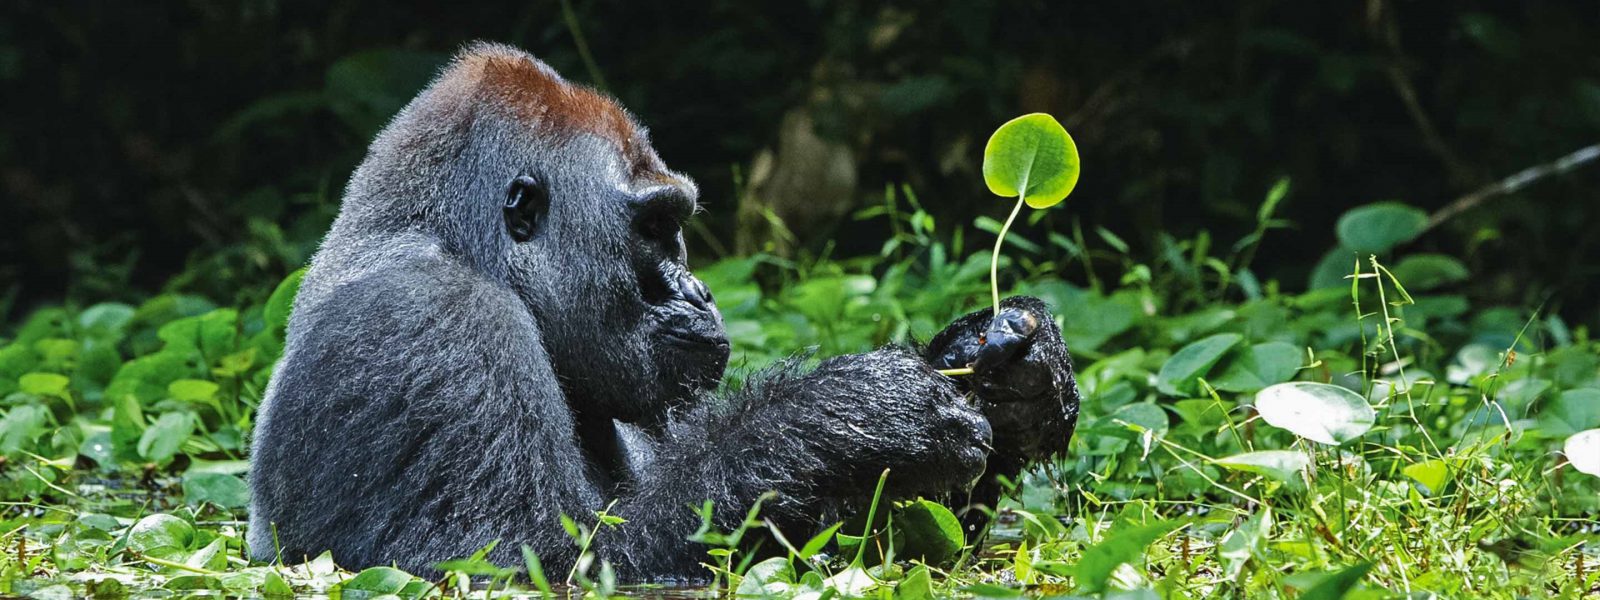 Uganda Gorilla Trekking From Kigali in 3 Days